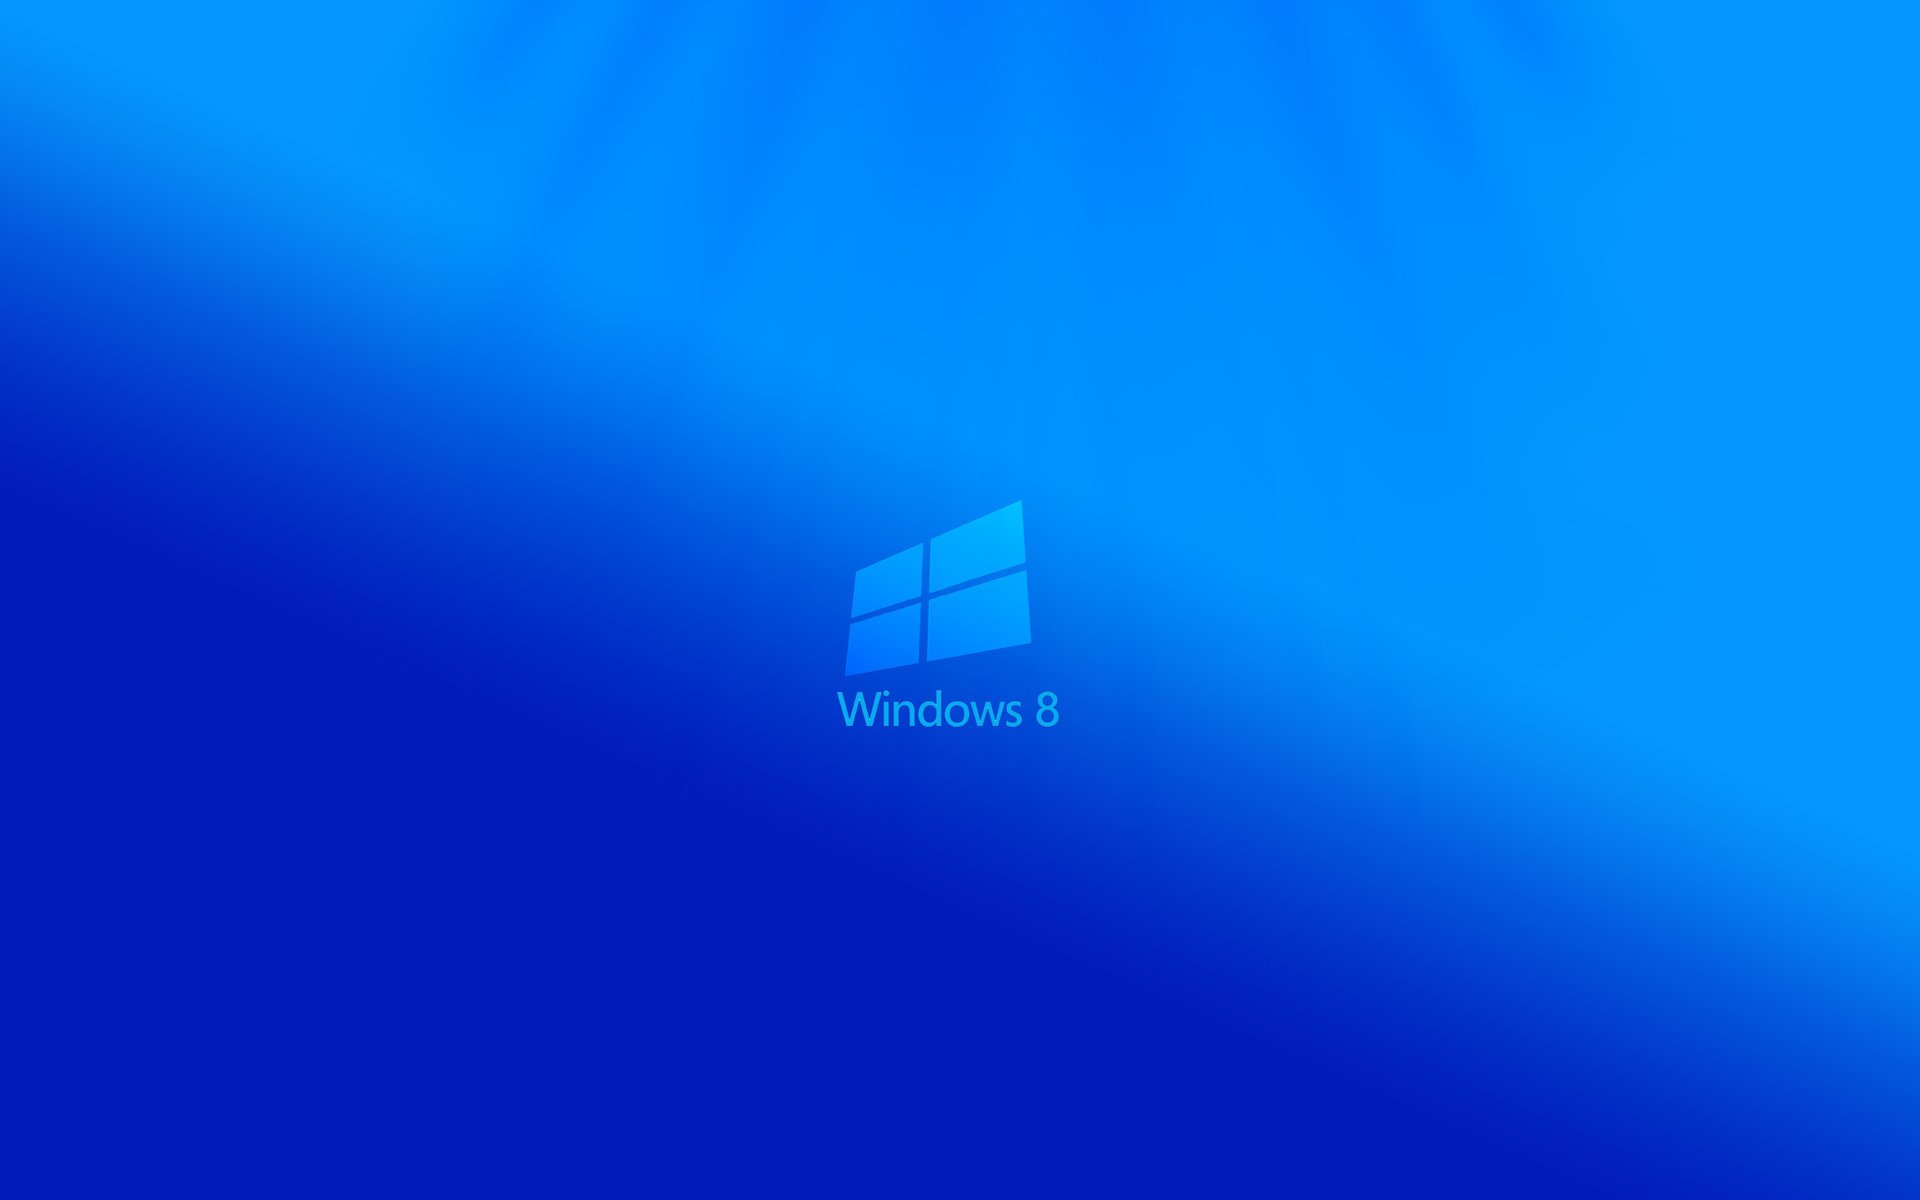 Логотип windows 8 на бликующем синем фоне